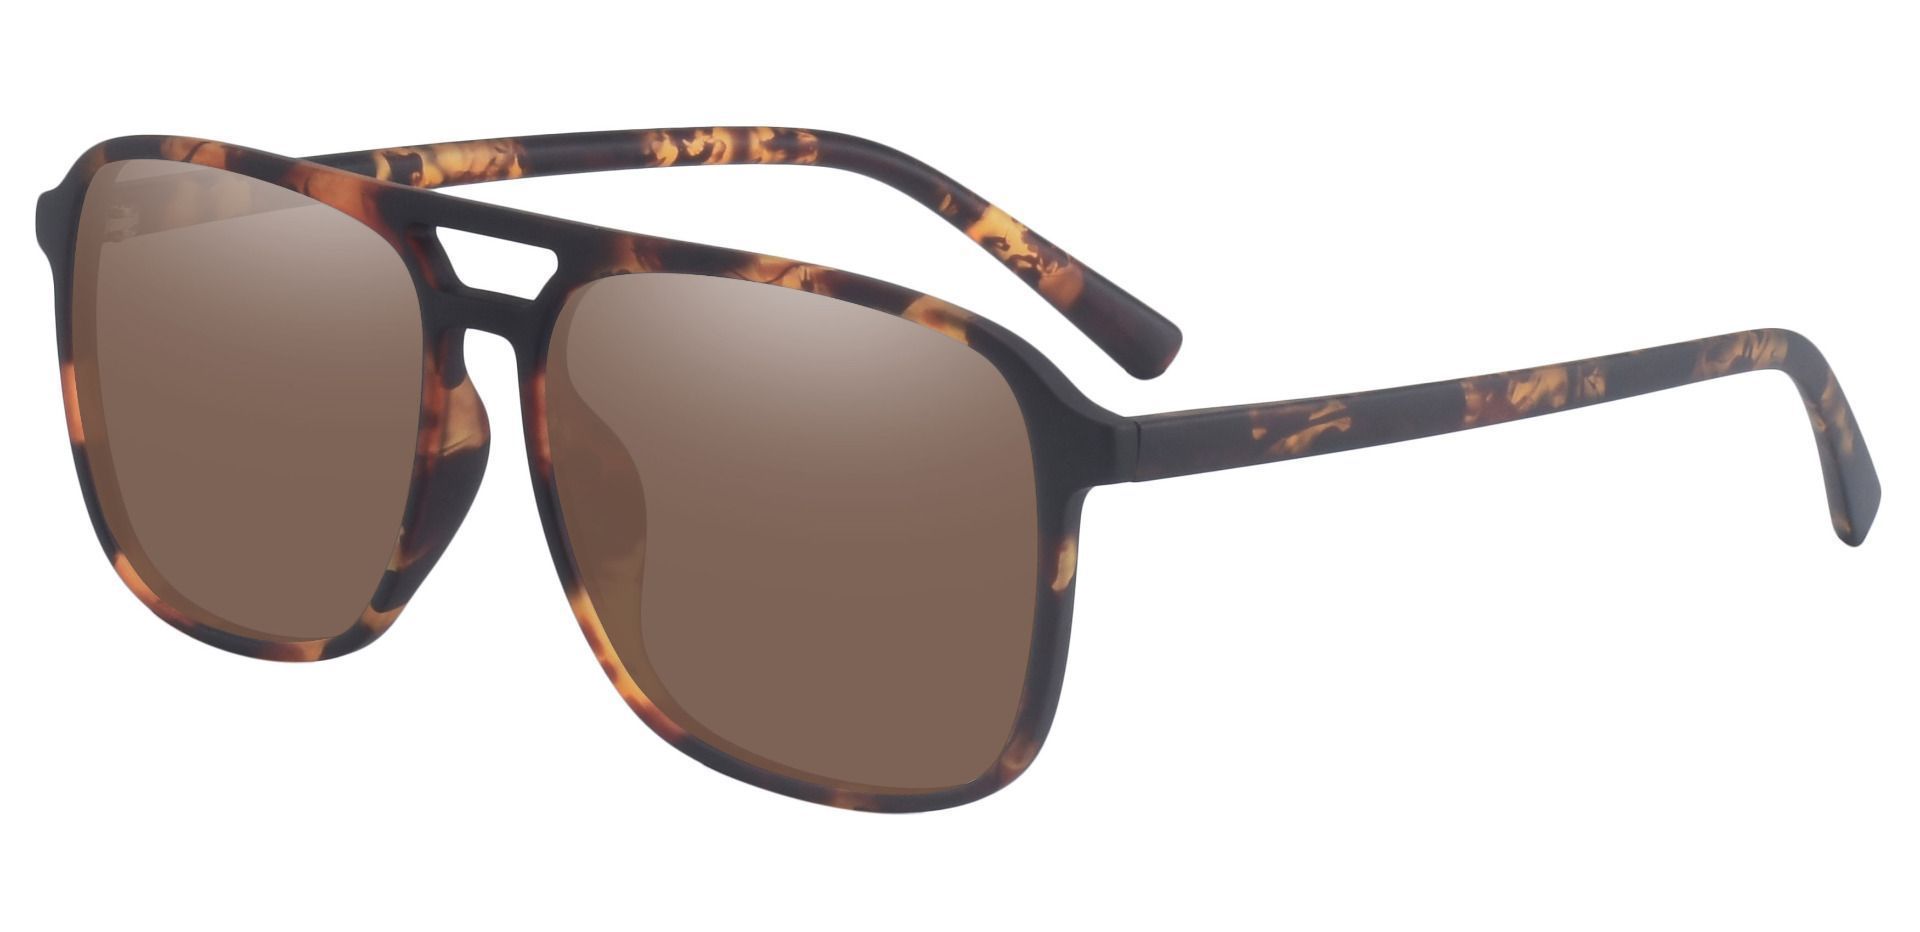 Edward Aviator Prescription Sunglasses - Tortoise Frame With Brown Lenses